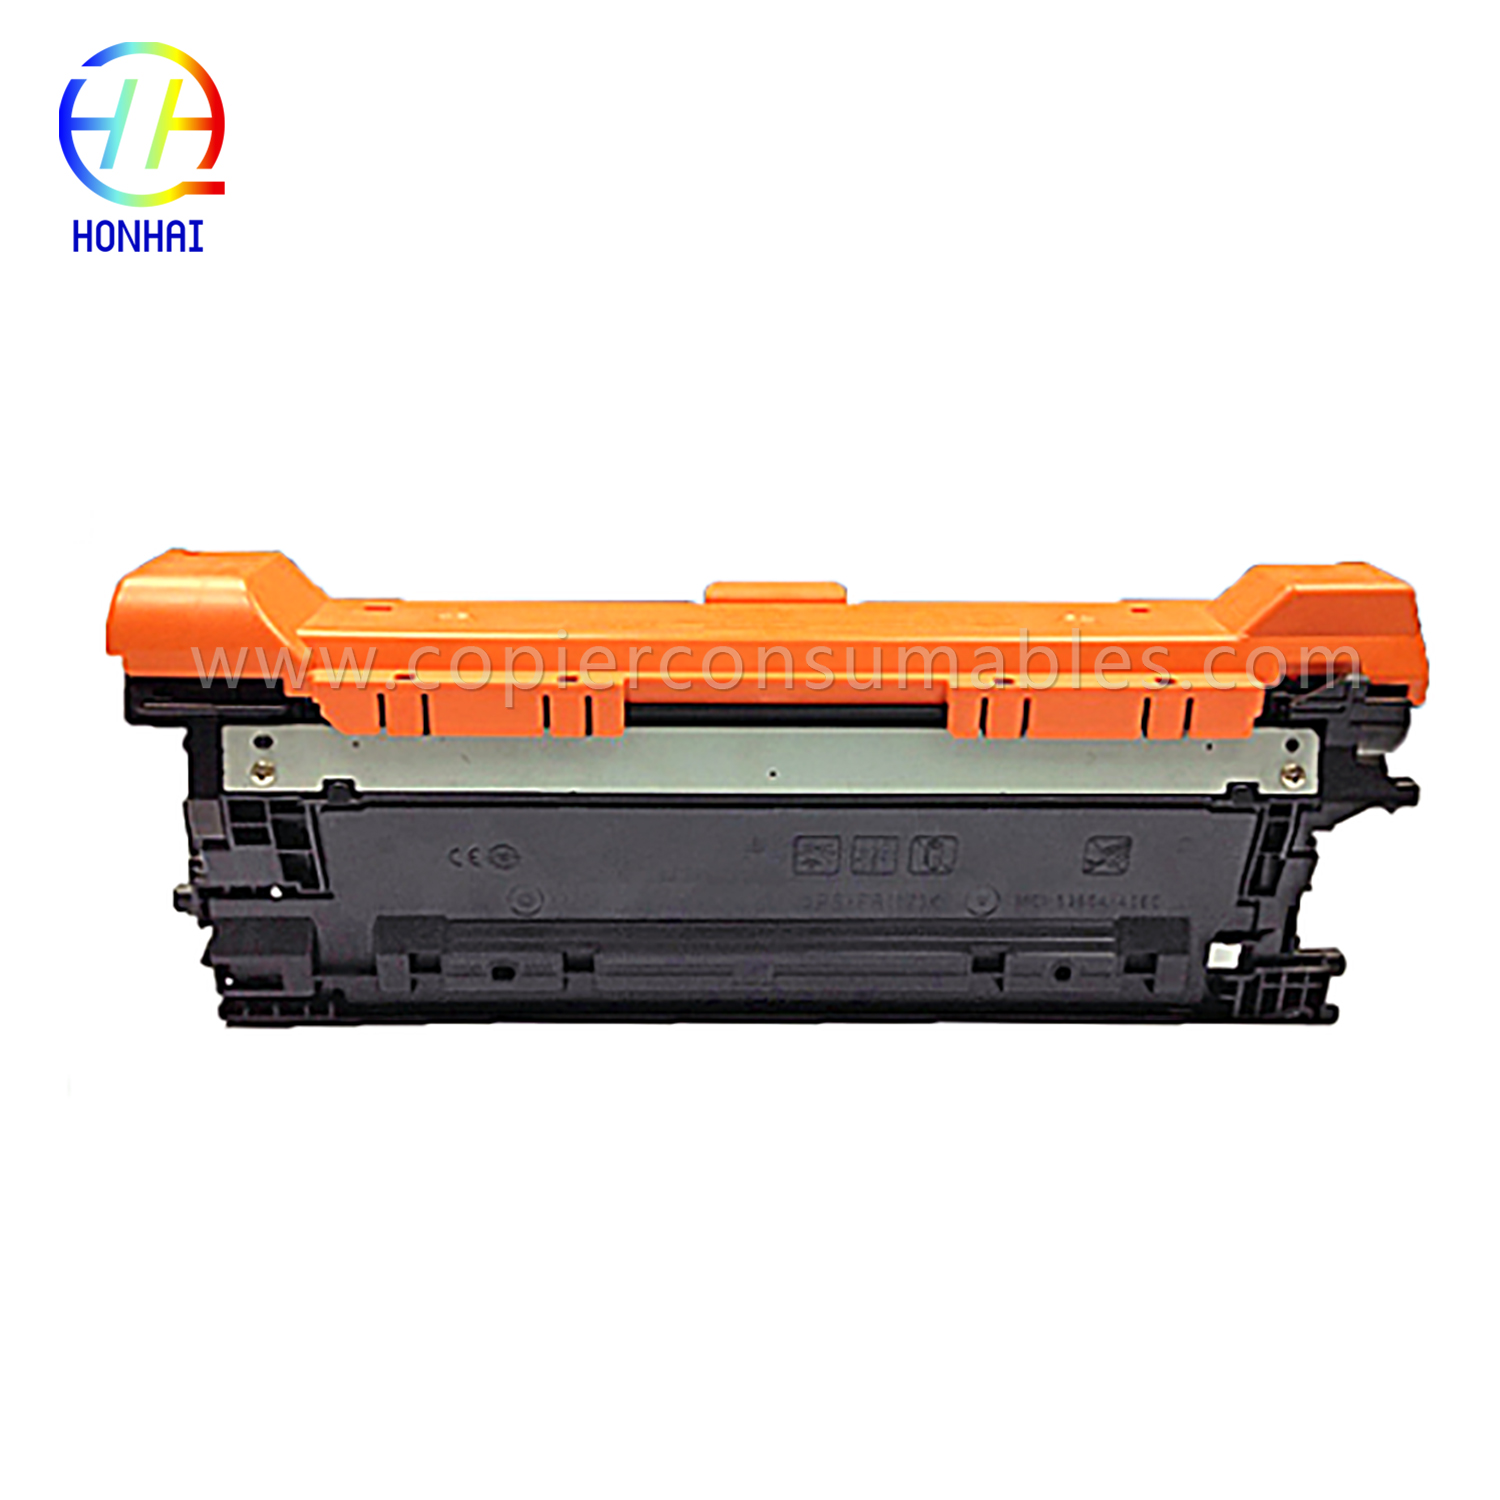 Farebné tonerové kazety HP Color Laserjet Enterprise M552 M553 (CF362X) -1 拷贝